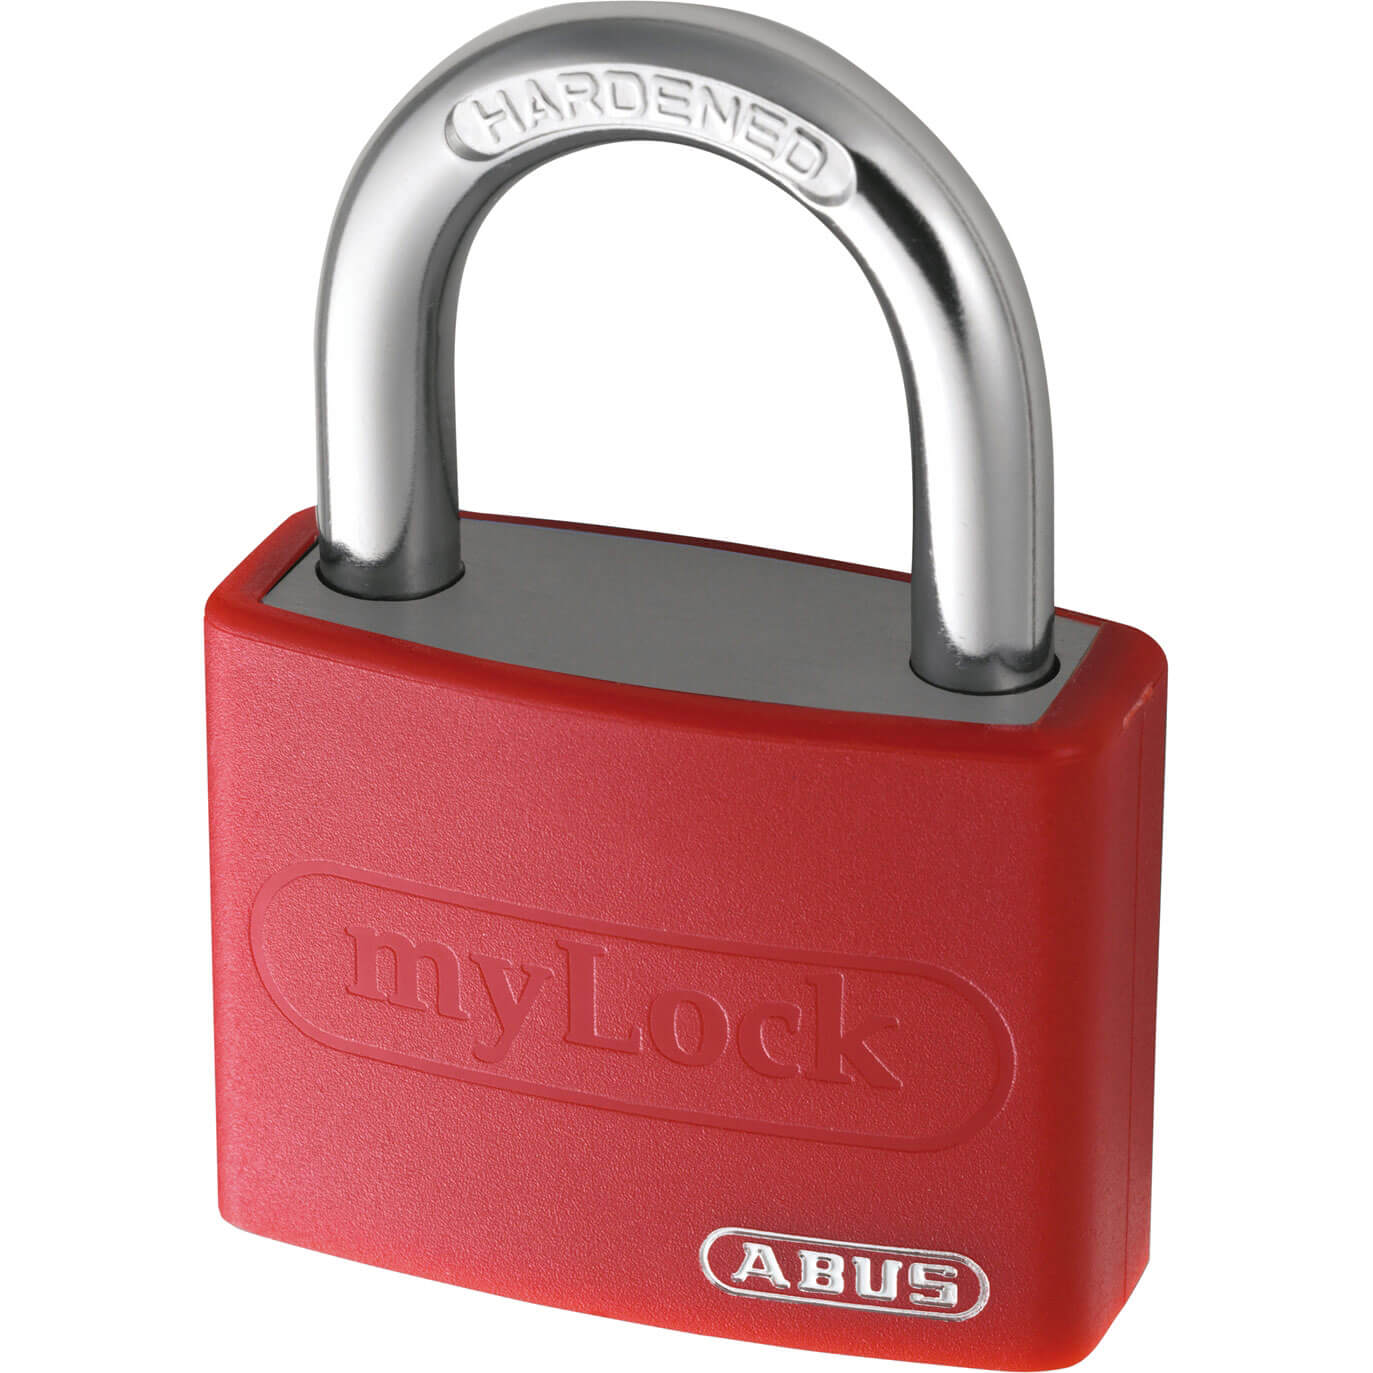 Photos - Door Lock ABUS T65AL Series Aluminium Padlock Red Keyed Alike 40mm Standard 6401 499 